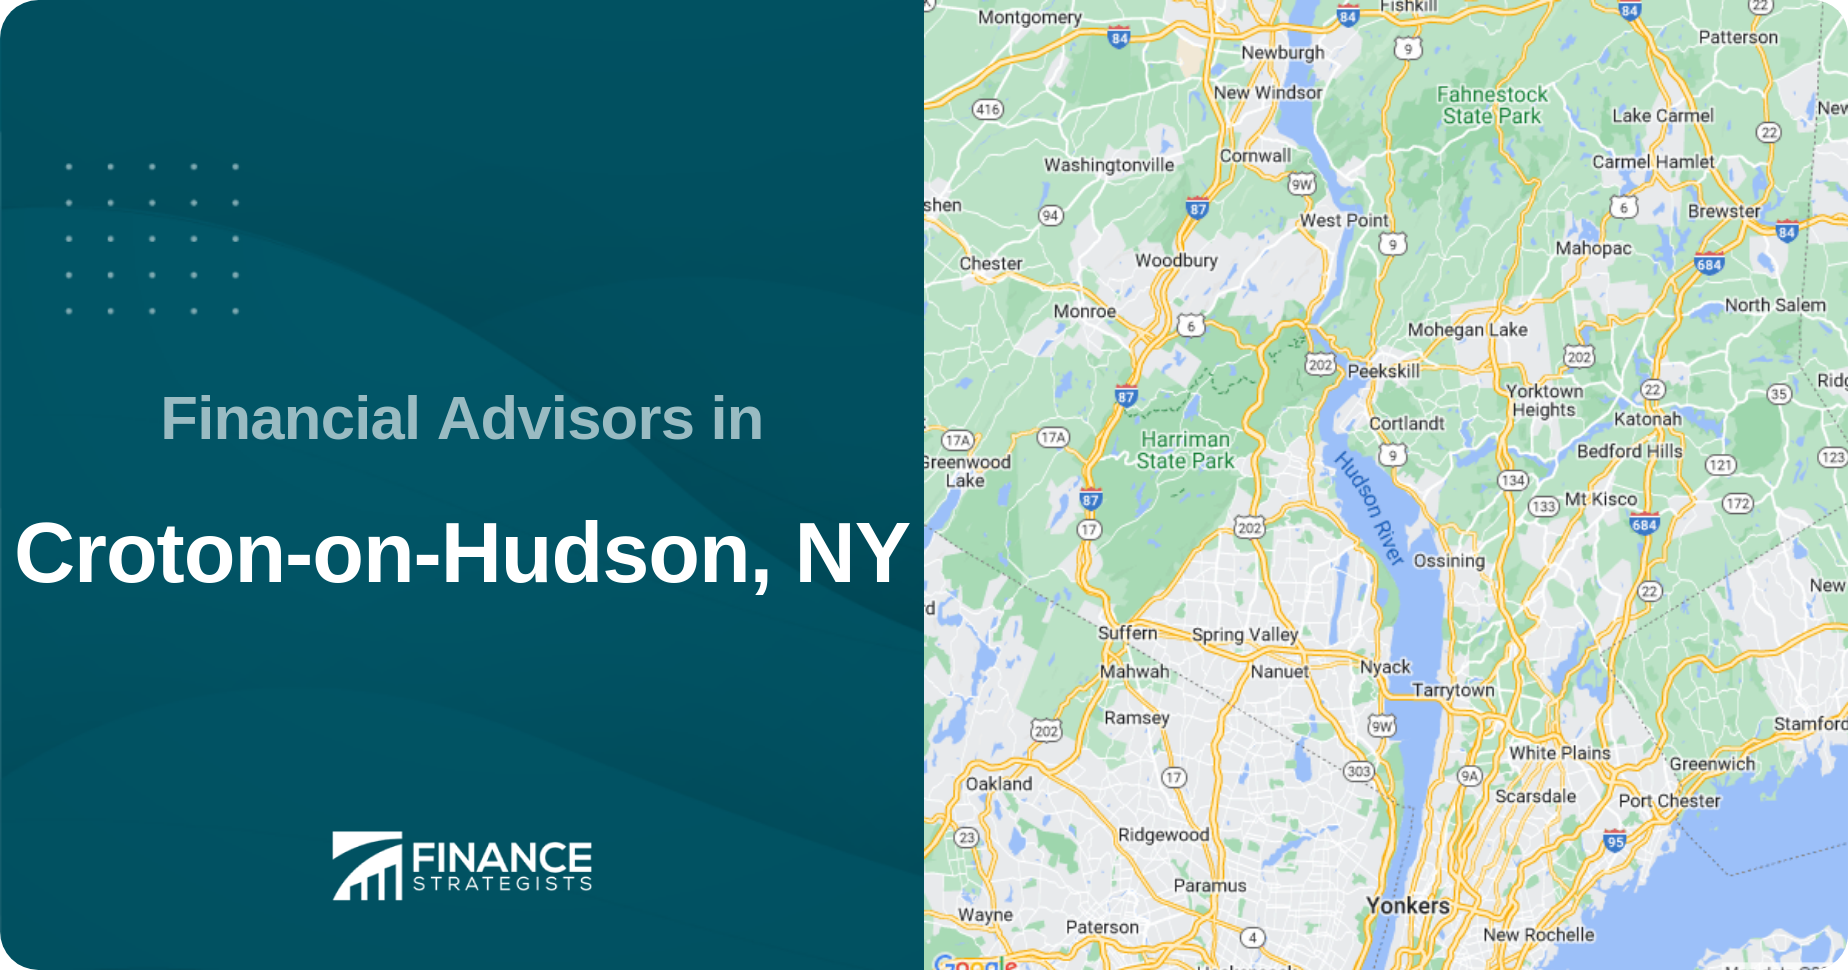 Financial Advisors in Croton-on-Hudson, NY